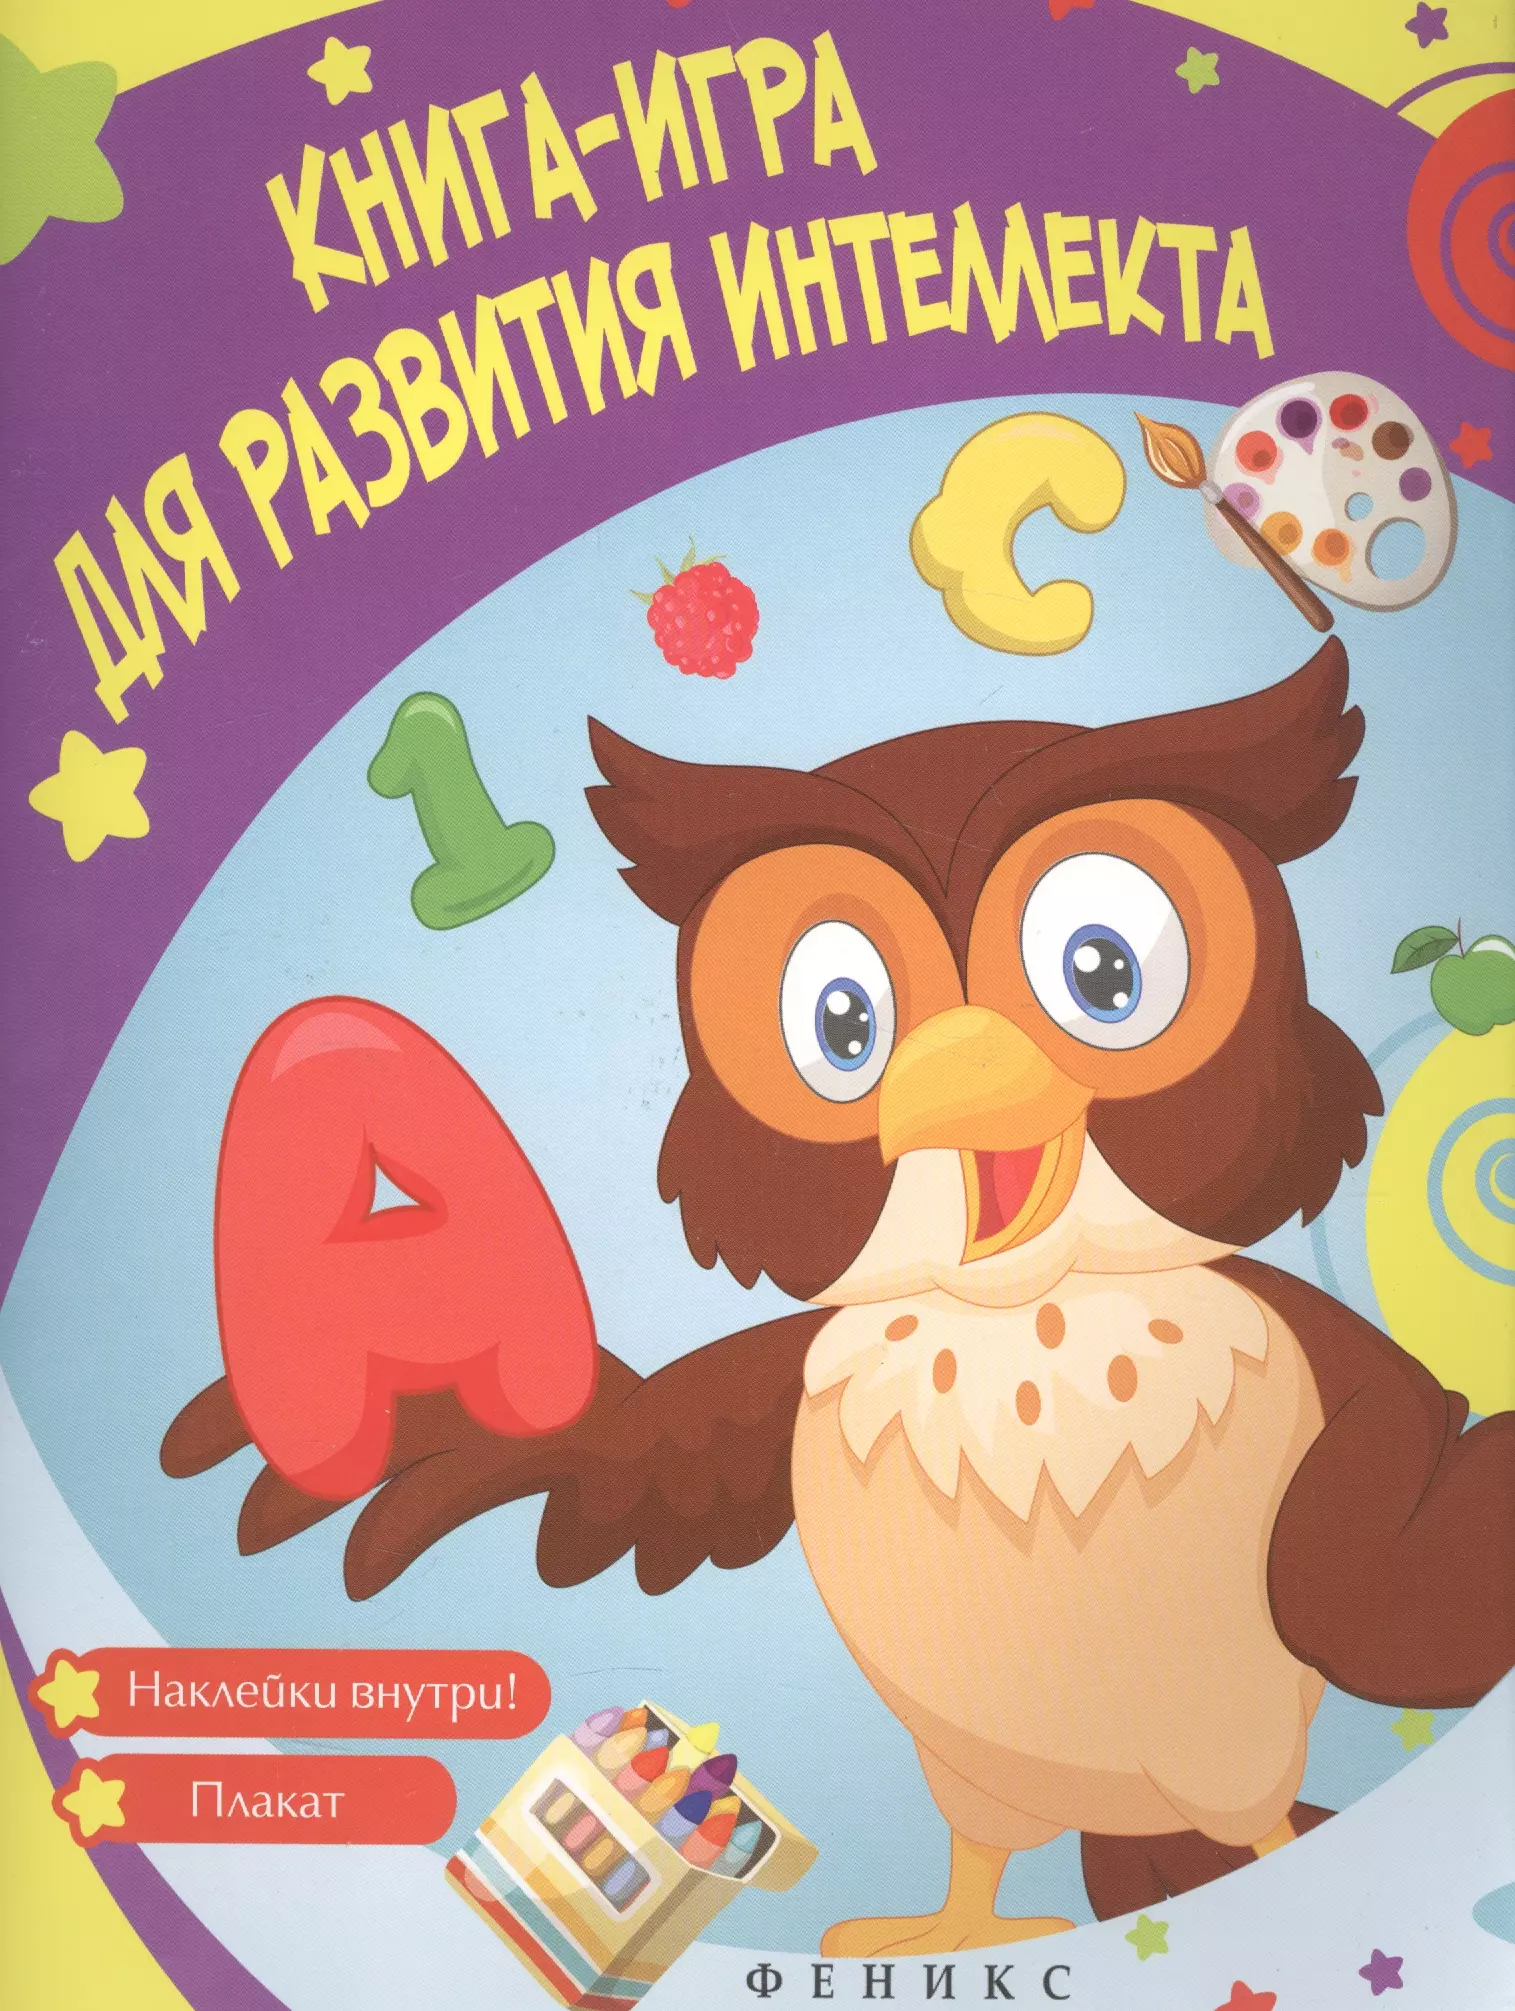 Белых Виктория Алексеевна - Книга-игра для развития интеллекта